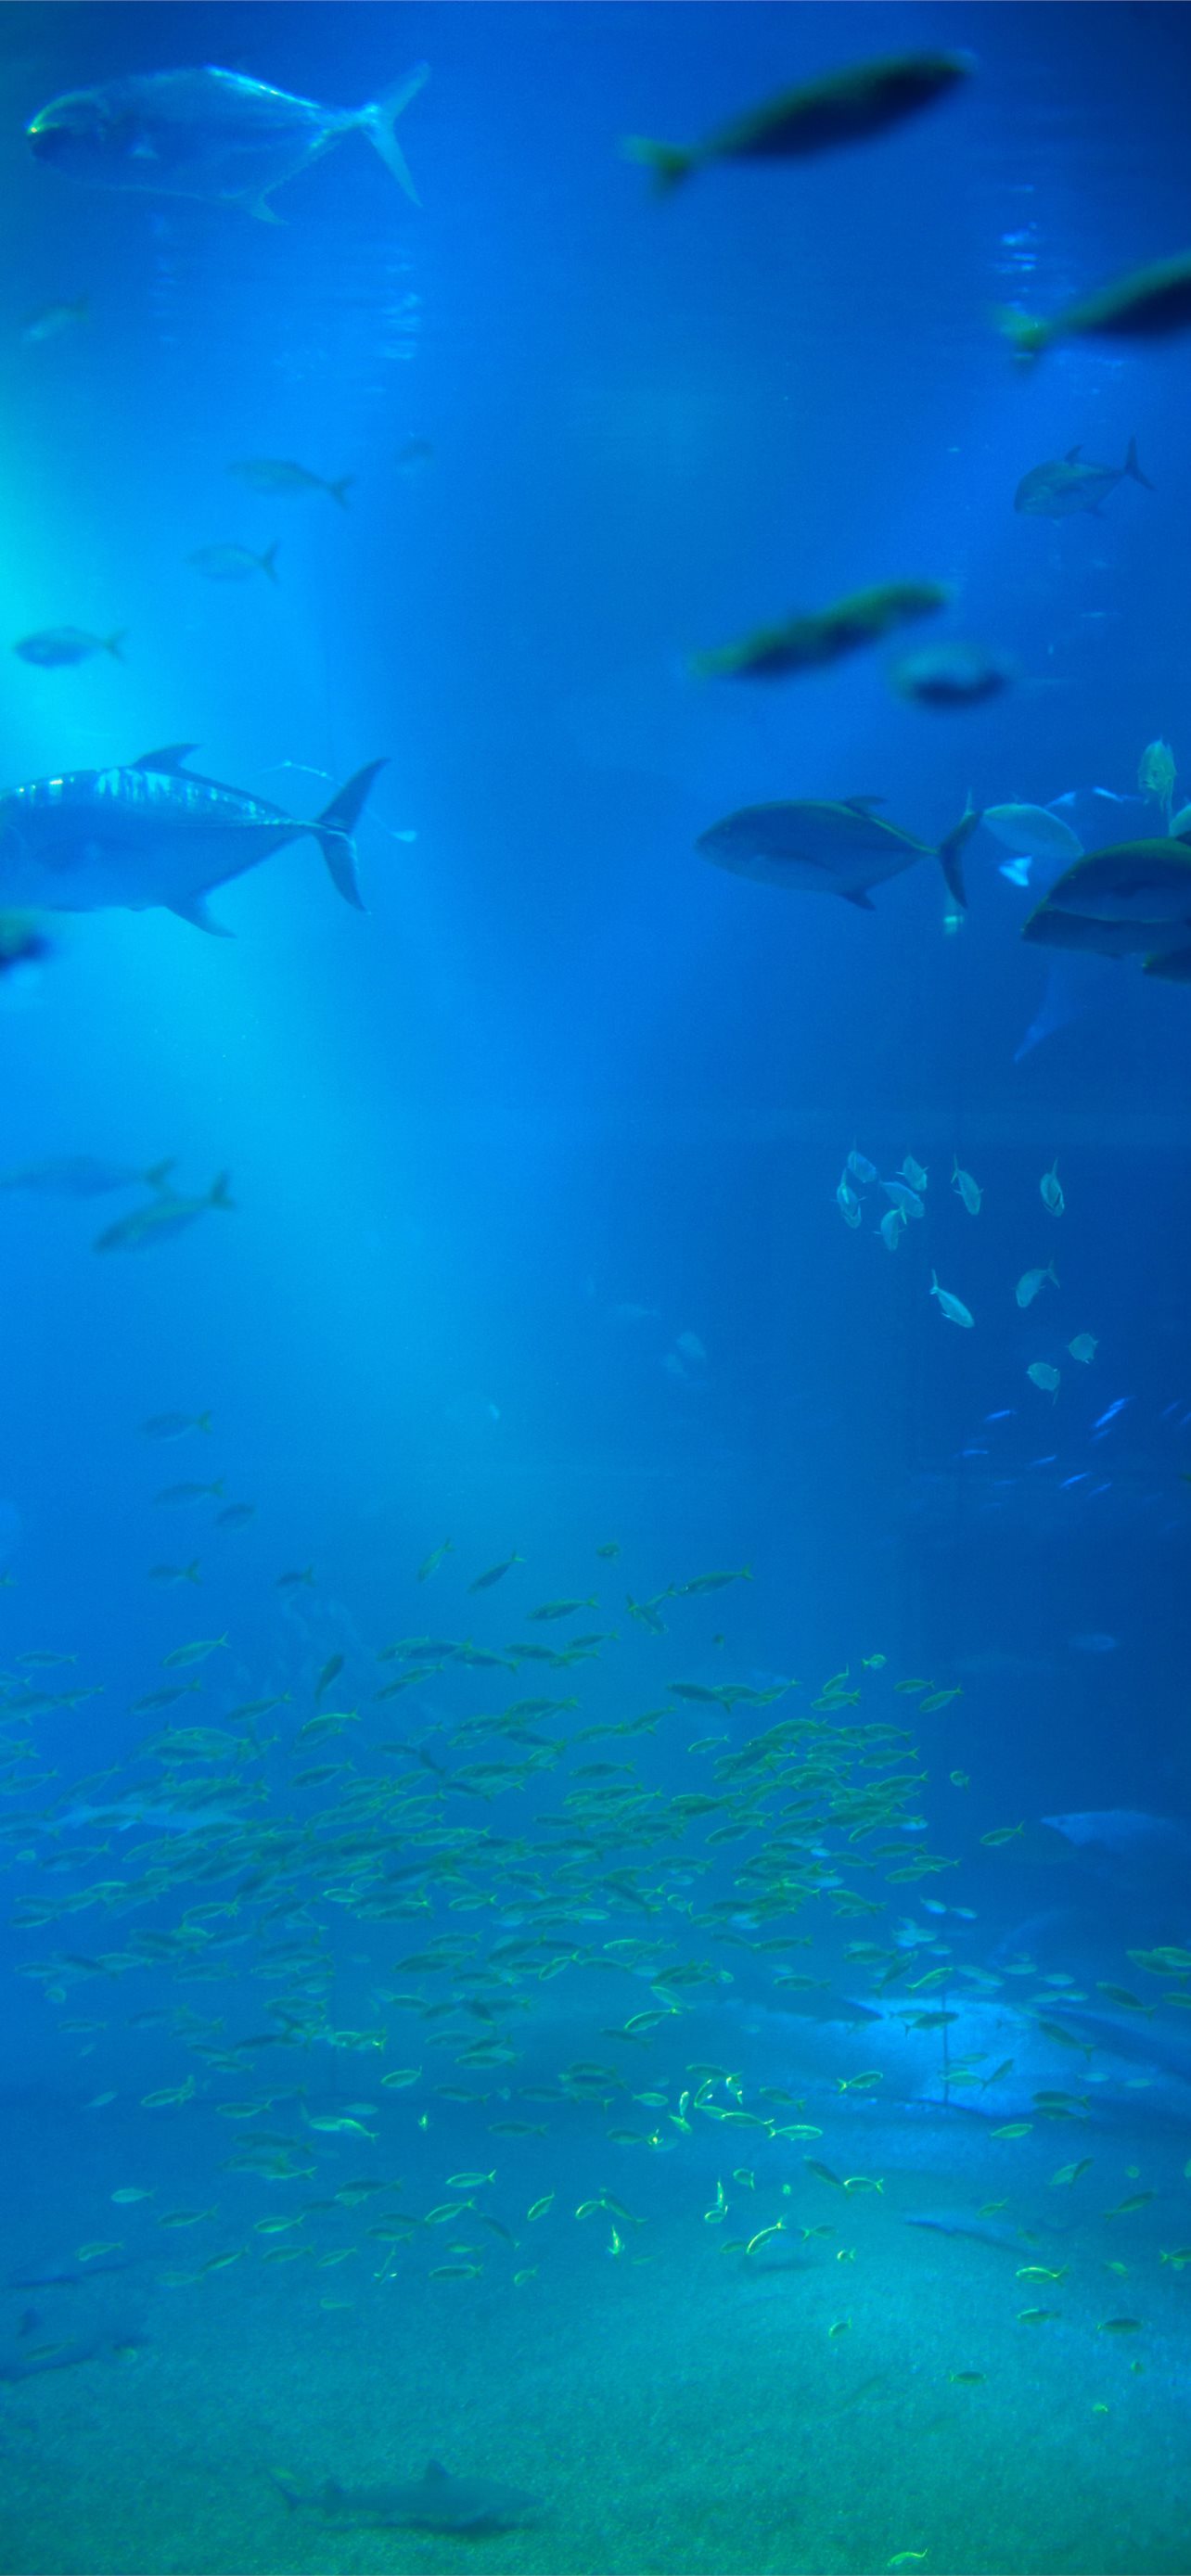 3D Aquarium Background Tank Backdrop Static Cling Wallpaper Sticker 61x30cm   Giá Tiki khuyến mãi 167000đ  Mua ngay  Tư vấn mua sắm  tiêu dùng  trực tuyến Bigomart